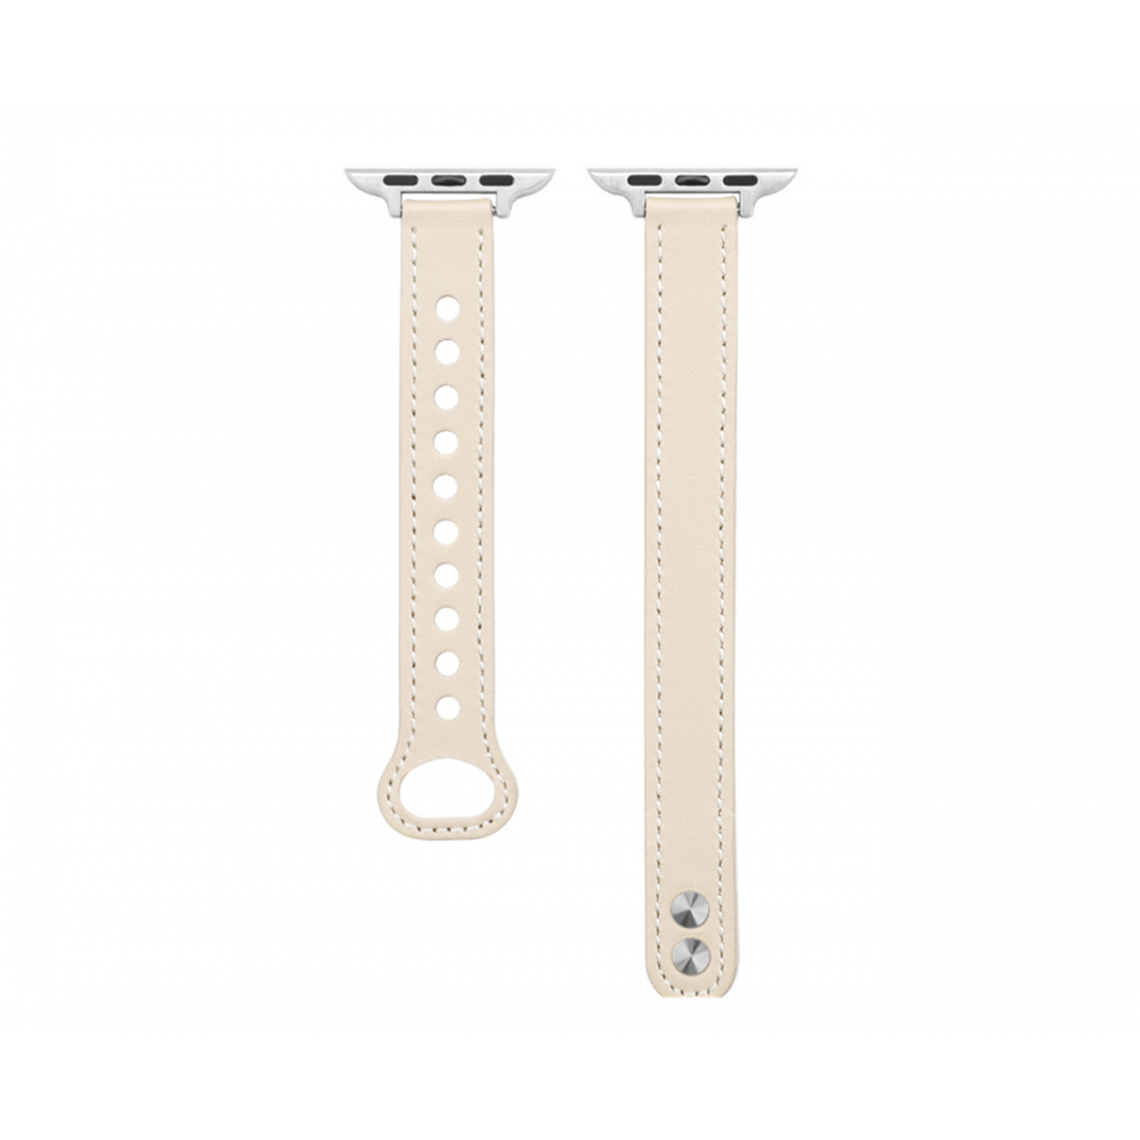 Generic - B05 Blanc Double Stud Sport Sport Sangle de remplacement Bracelets Apple Watch Band 42mm 44mm 44mm Femmes pour femmes pour iWatch 234567 SE - Accessoires Apple Watch